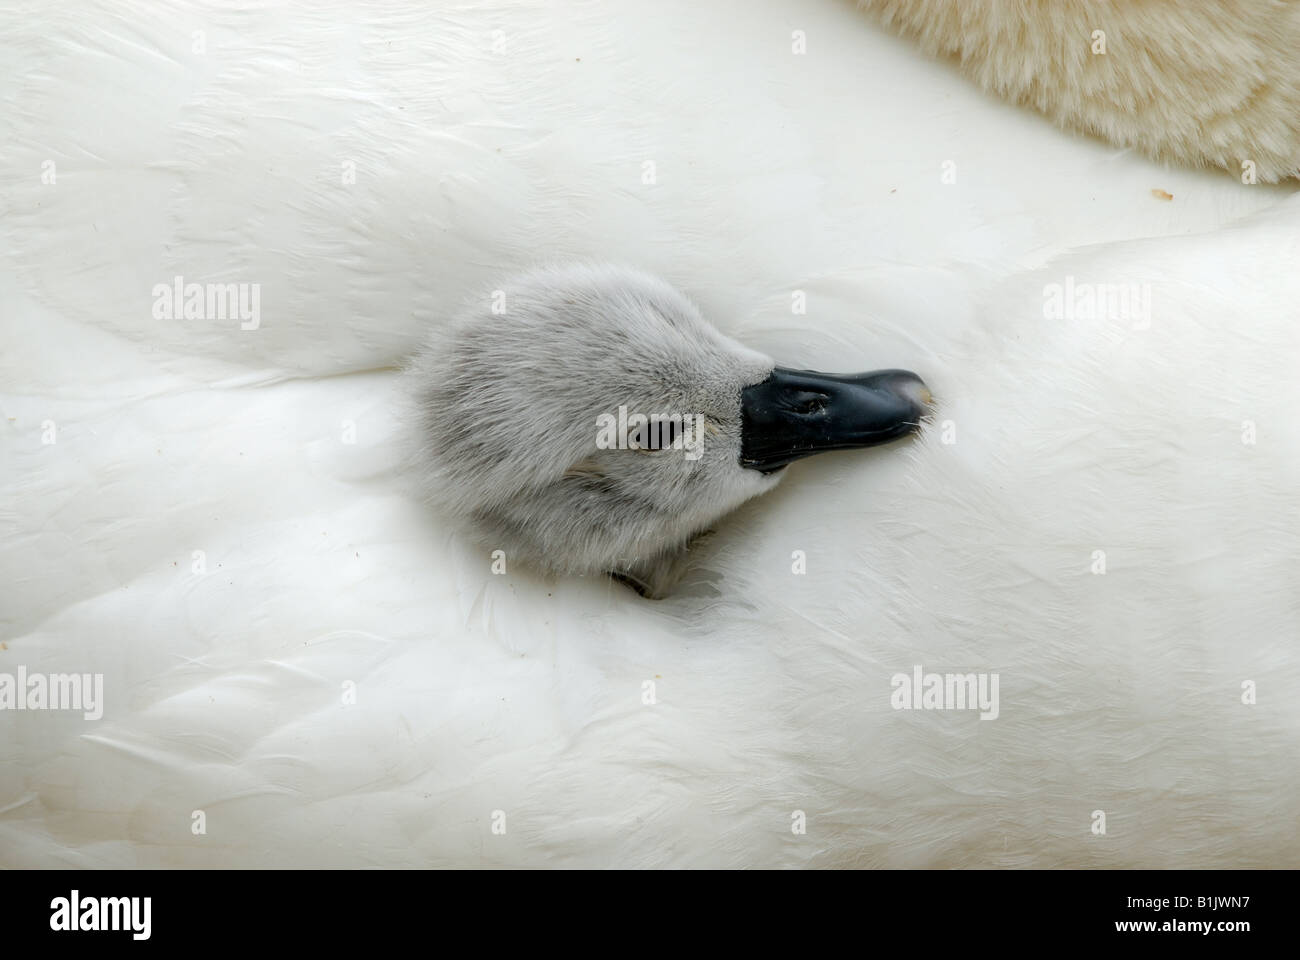 Molto giovane cigno cygnet bloccata la sua testa fuori dal tra madri ala piume Abbotsbury Foto Stock